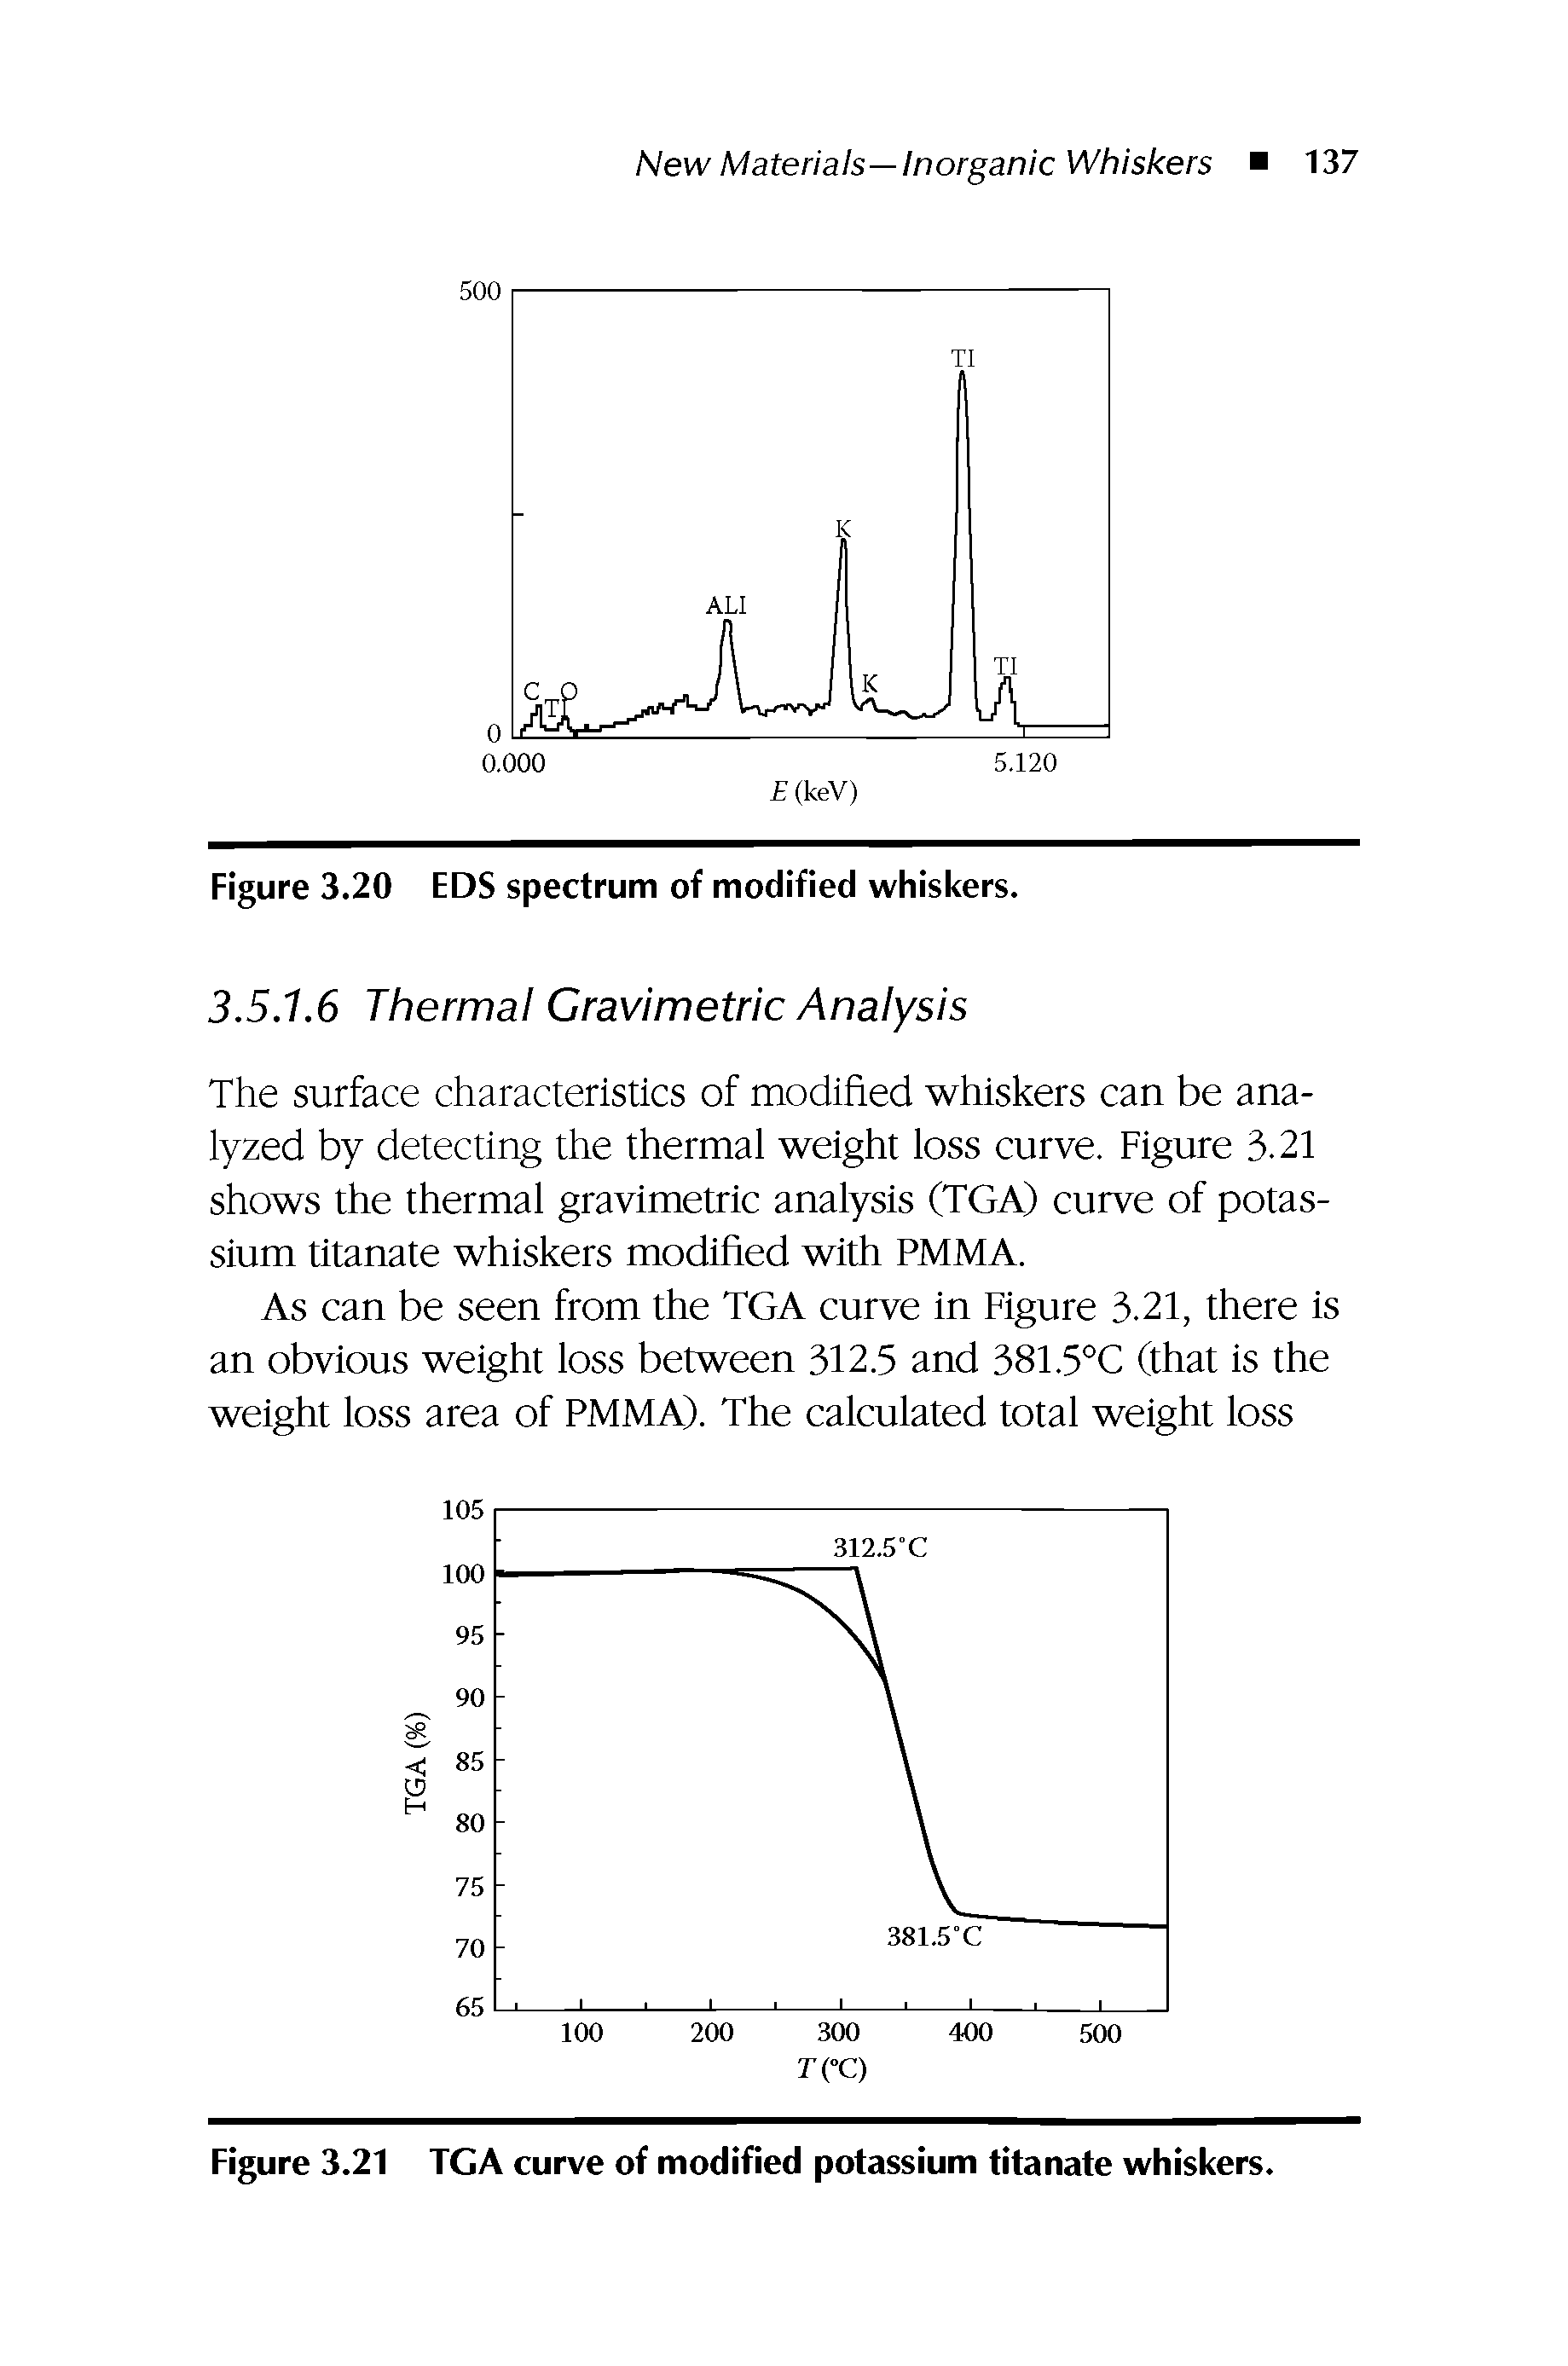 Figure 3.21 TGA curve of modified potassium titanate whiskers.